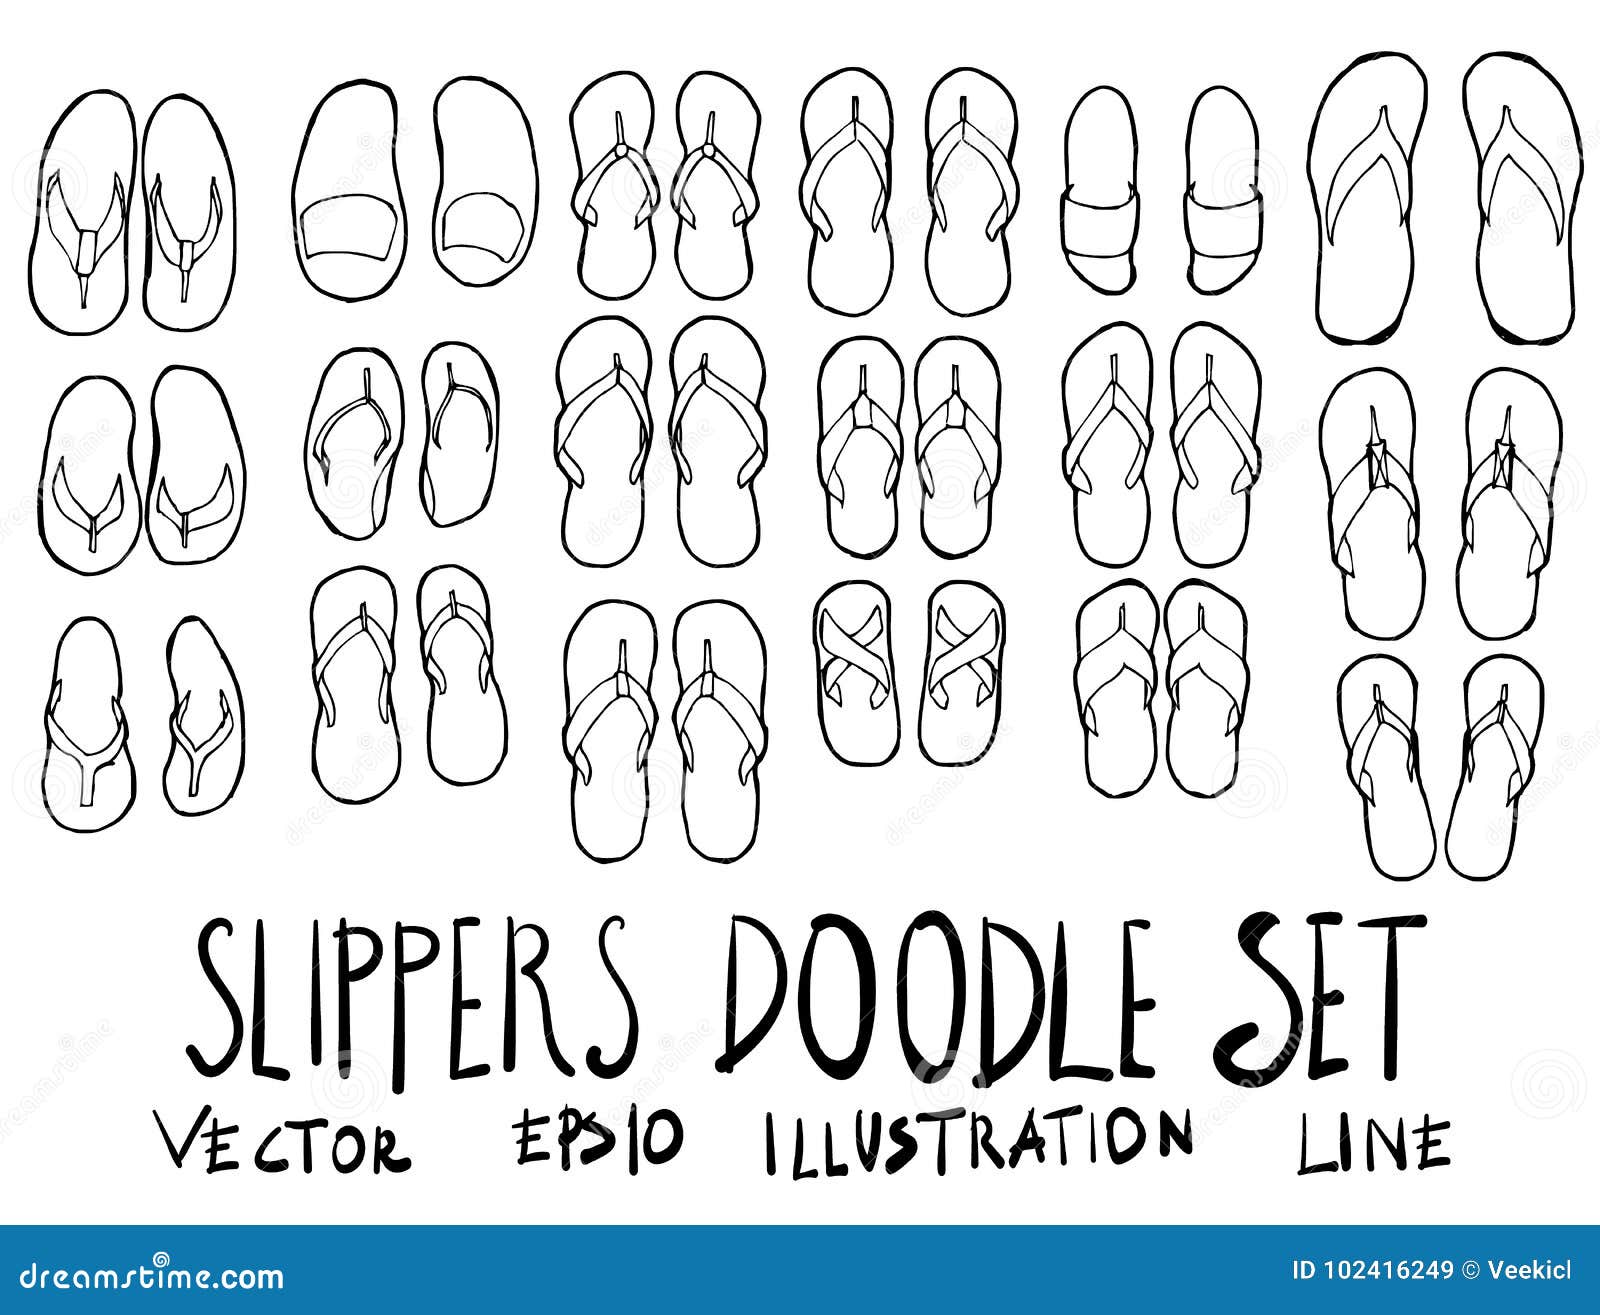 Set of Slippers Illustration Hand Drawn Doodle Sketch Line Vector Eps10  Stock Illustration - Illustration of idea, footwear: 102416249